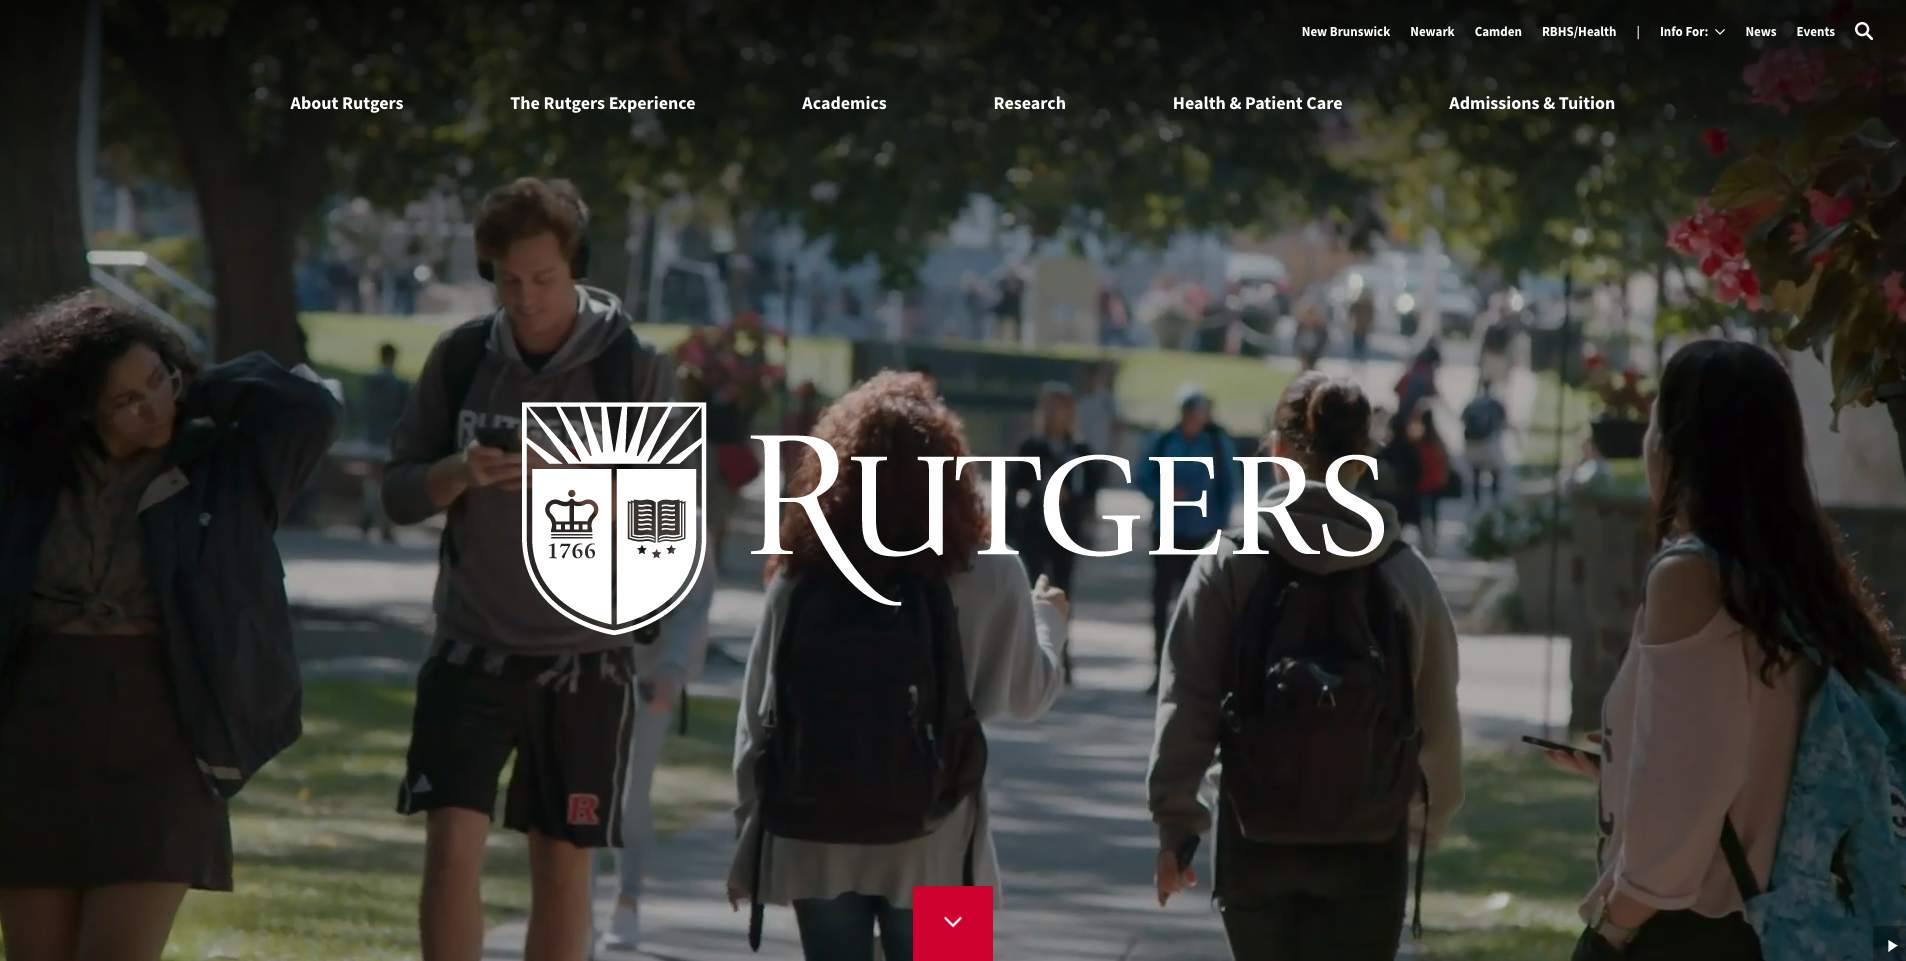 (c) Rutgers.edu